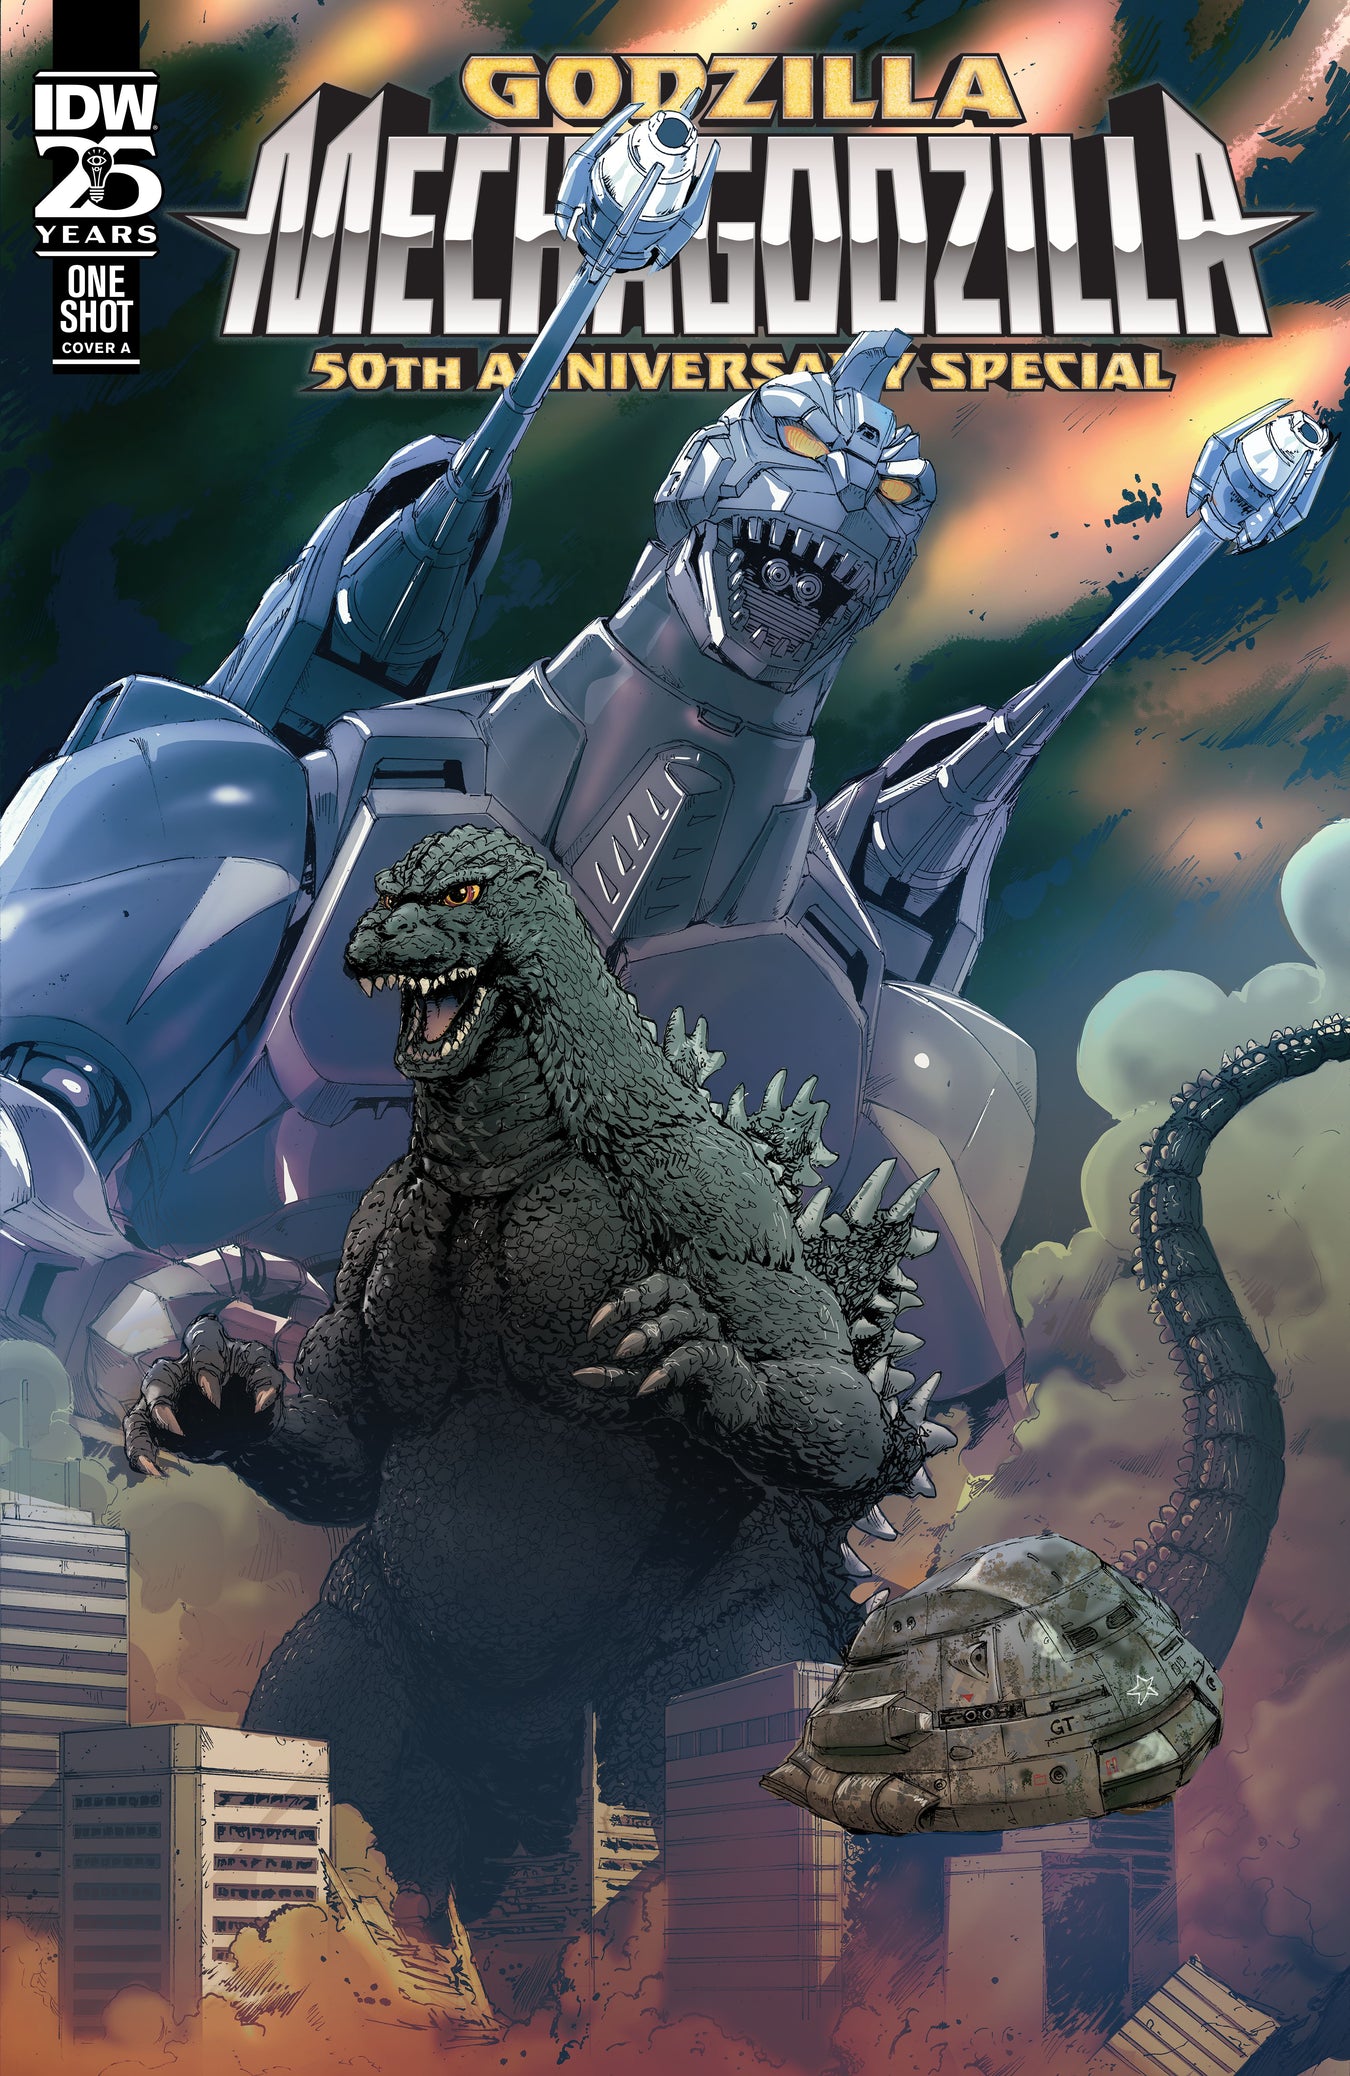 Godzilla: Mechagodzilla 50th Anniversary